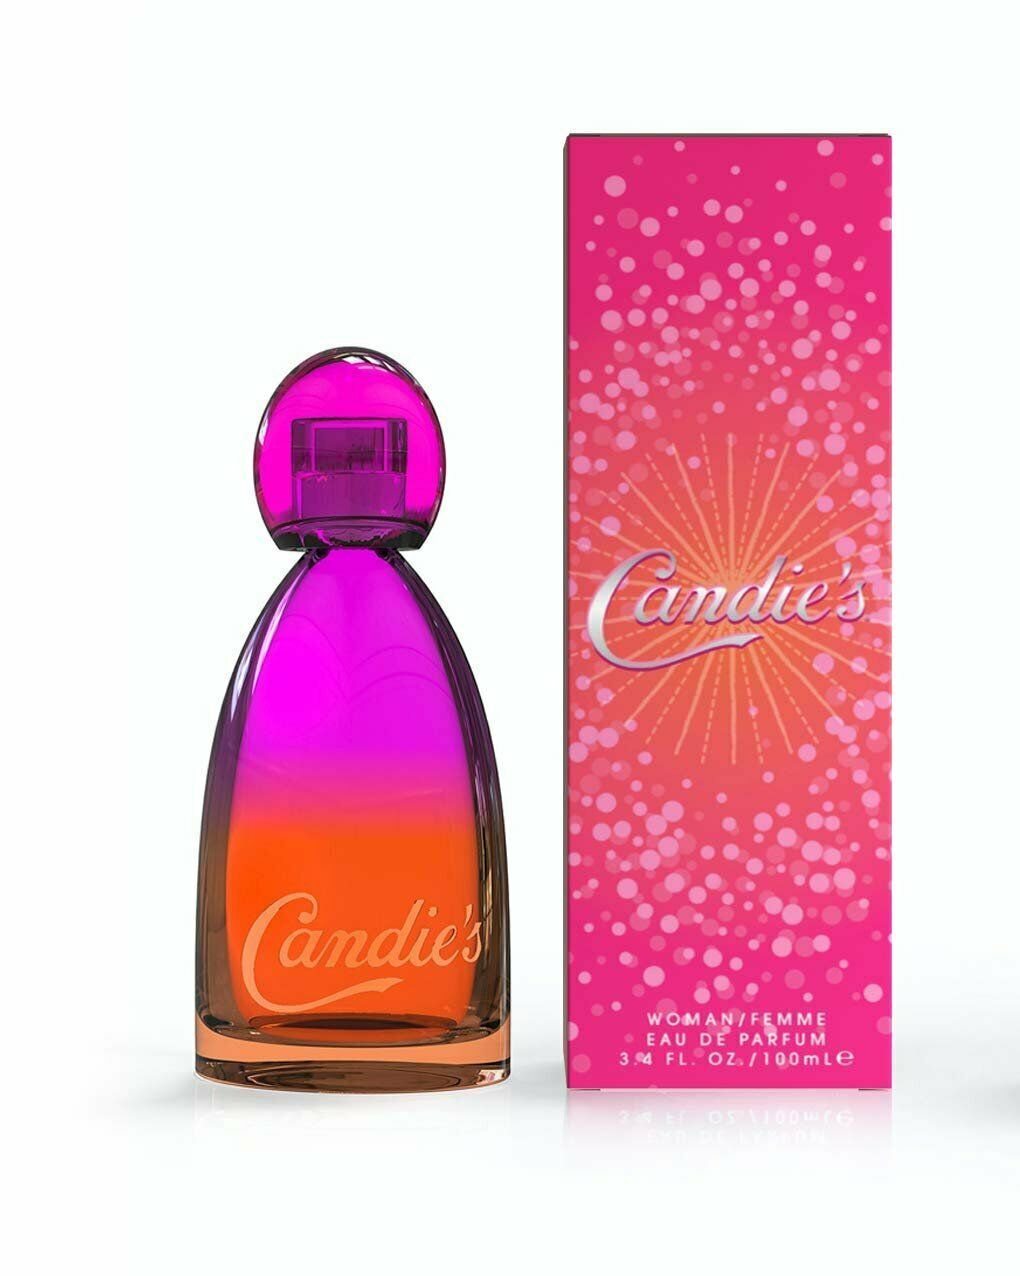 Candie's by Liz Claiborne Woman Femme Eau de Parfum EDP 3.4 oz / 100 ml SEALED - Perfume Gallery